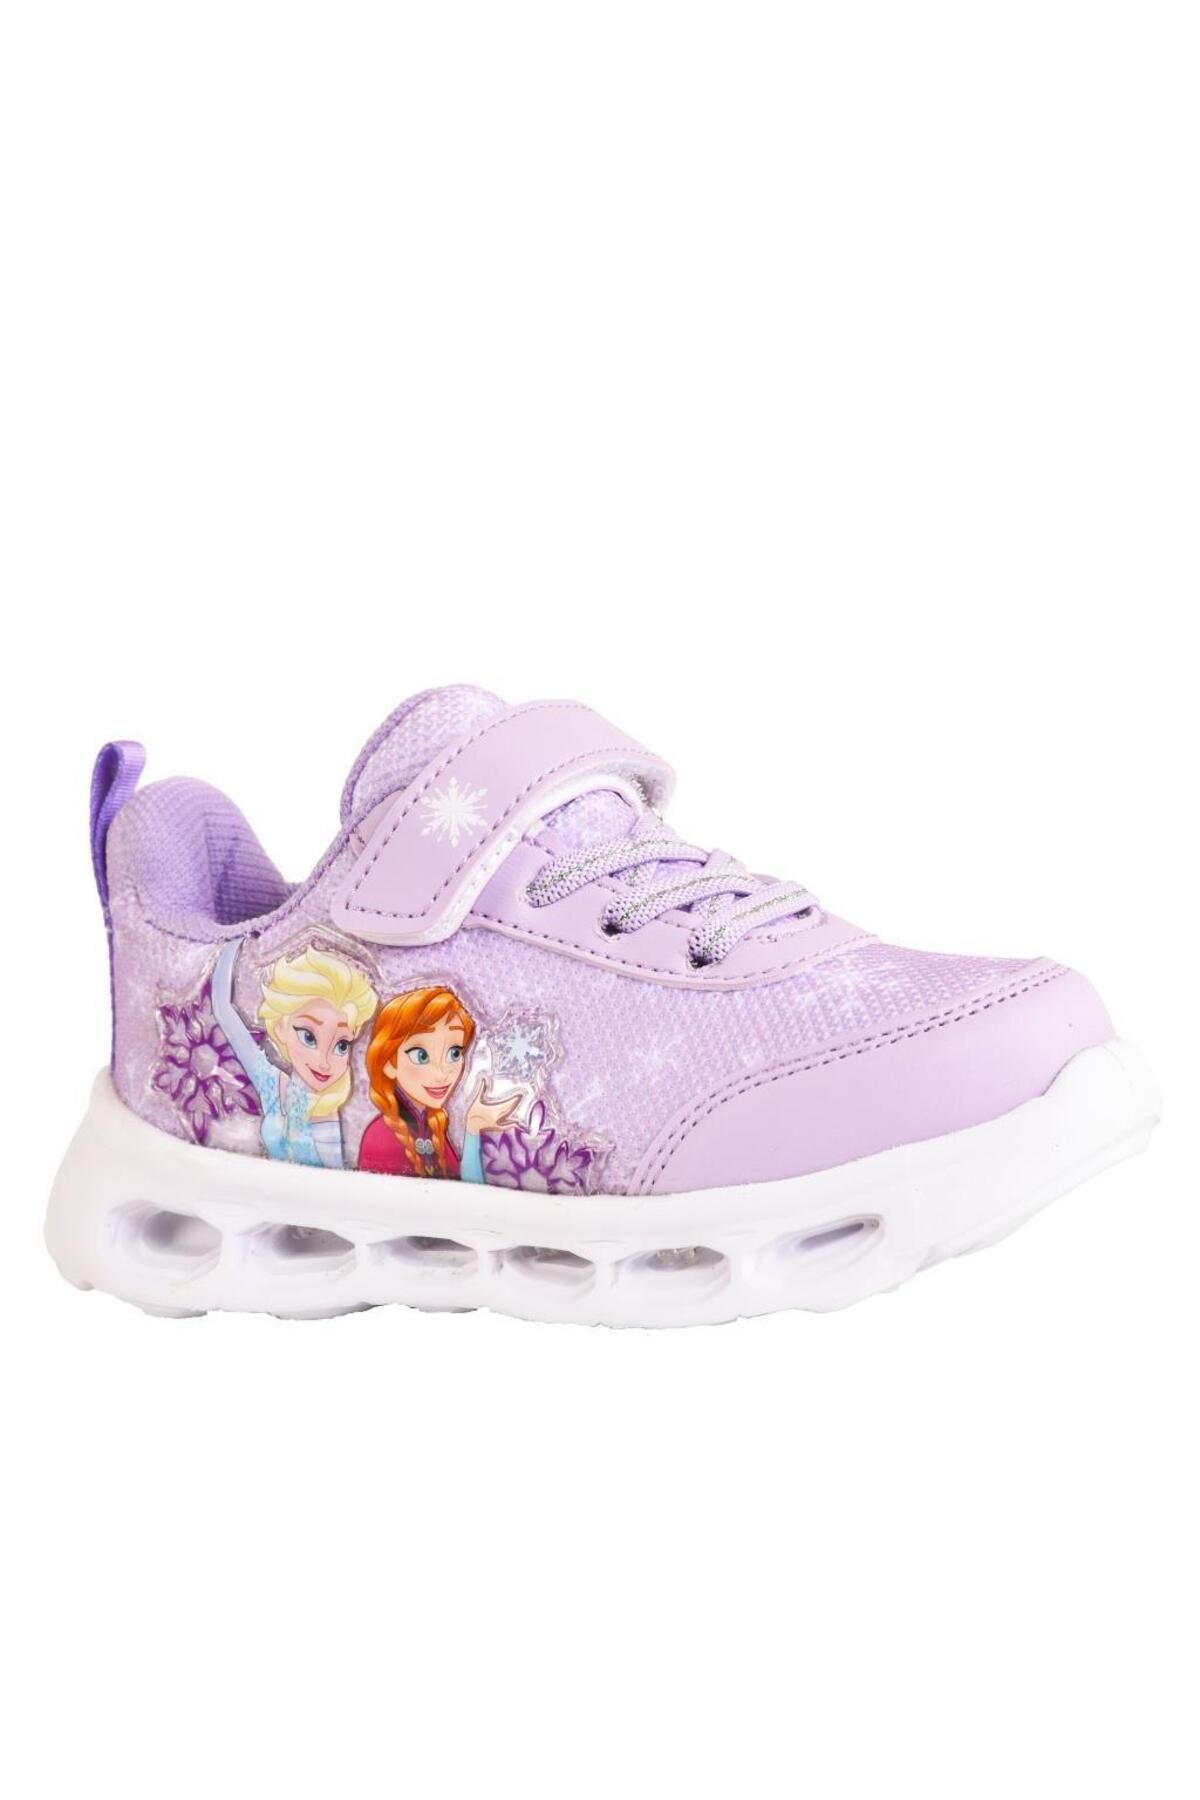 Genel Markalar Elsa Anna Kız Çocuk Işıklı Pembe / Lila Spor Ayakkabı